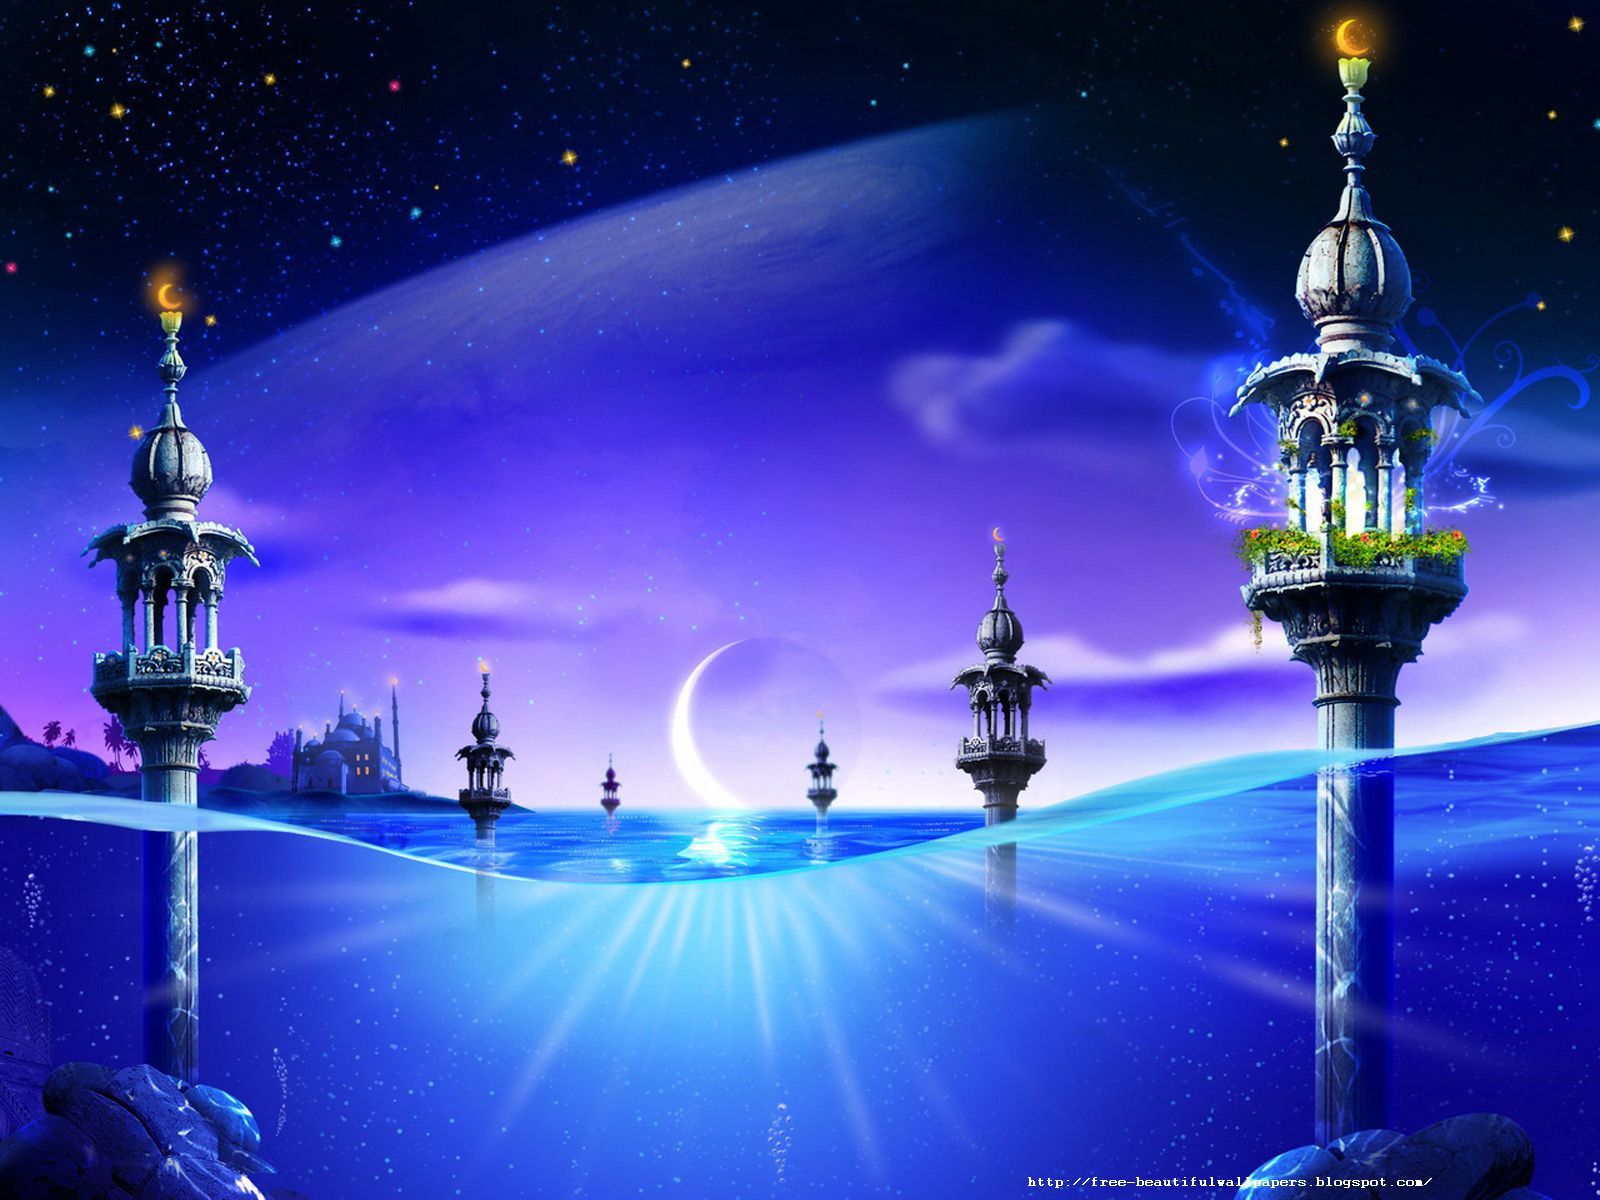 Beautiful Islamic Wallpapers - Top Những Hình Ảnh Đẹp